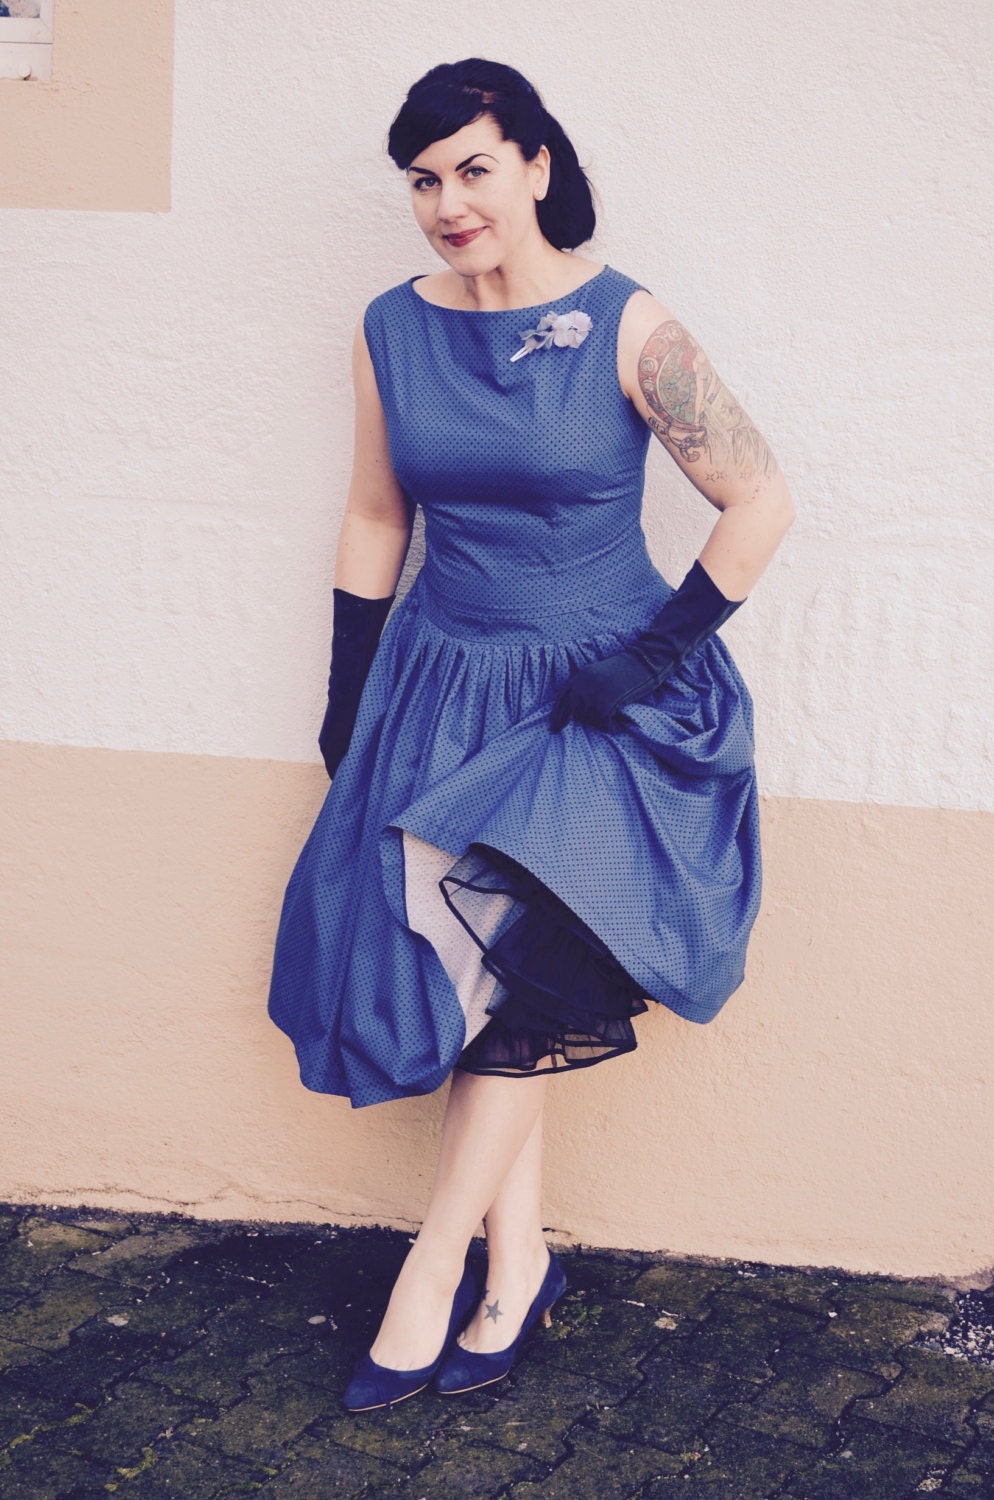 Swing dress with bolero jacket 'Polka dot' | Etsy